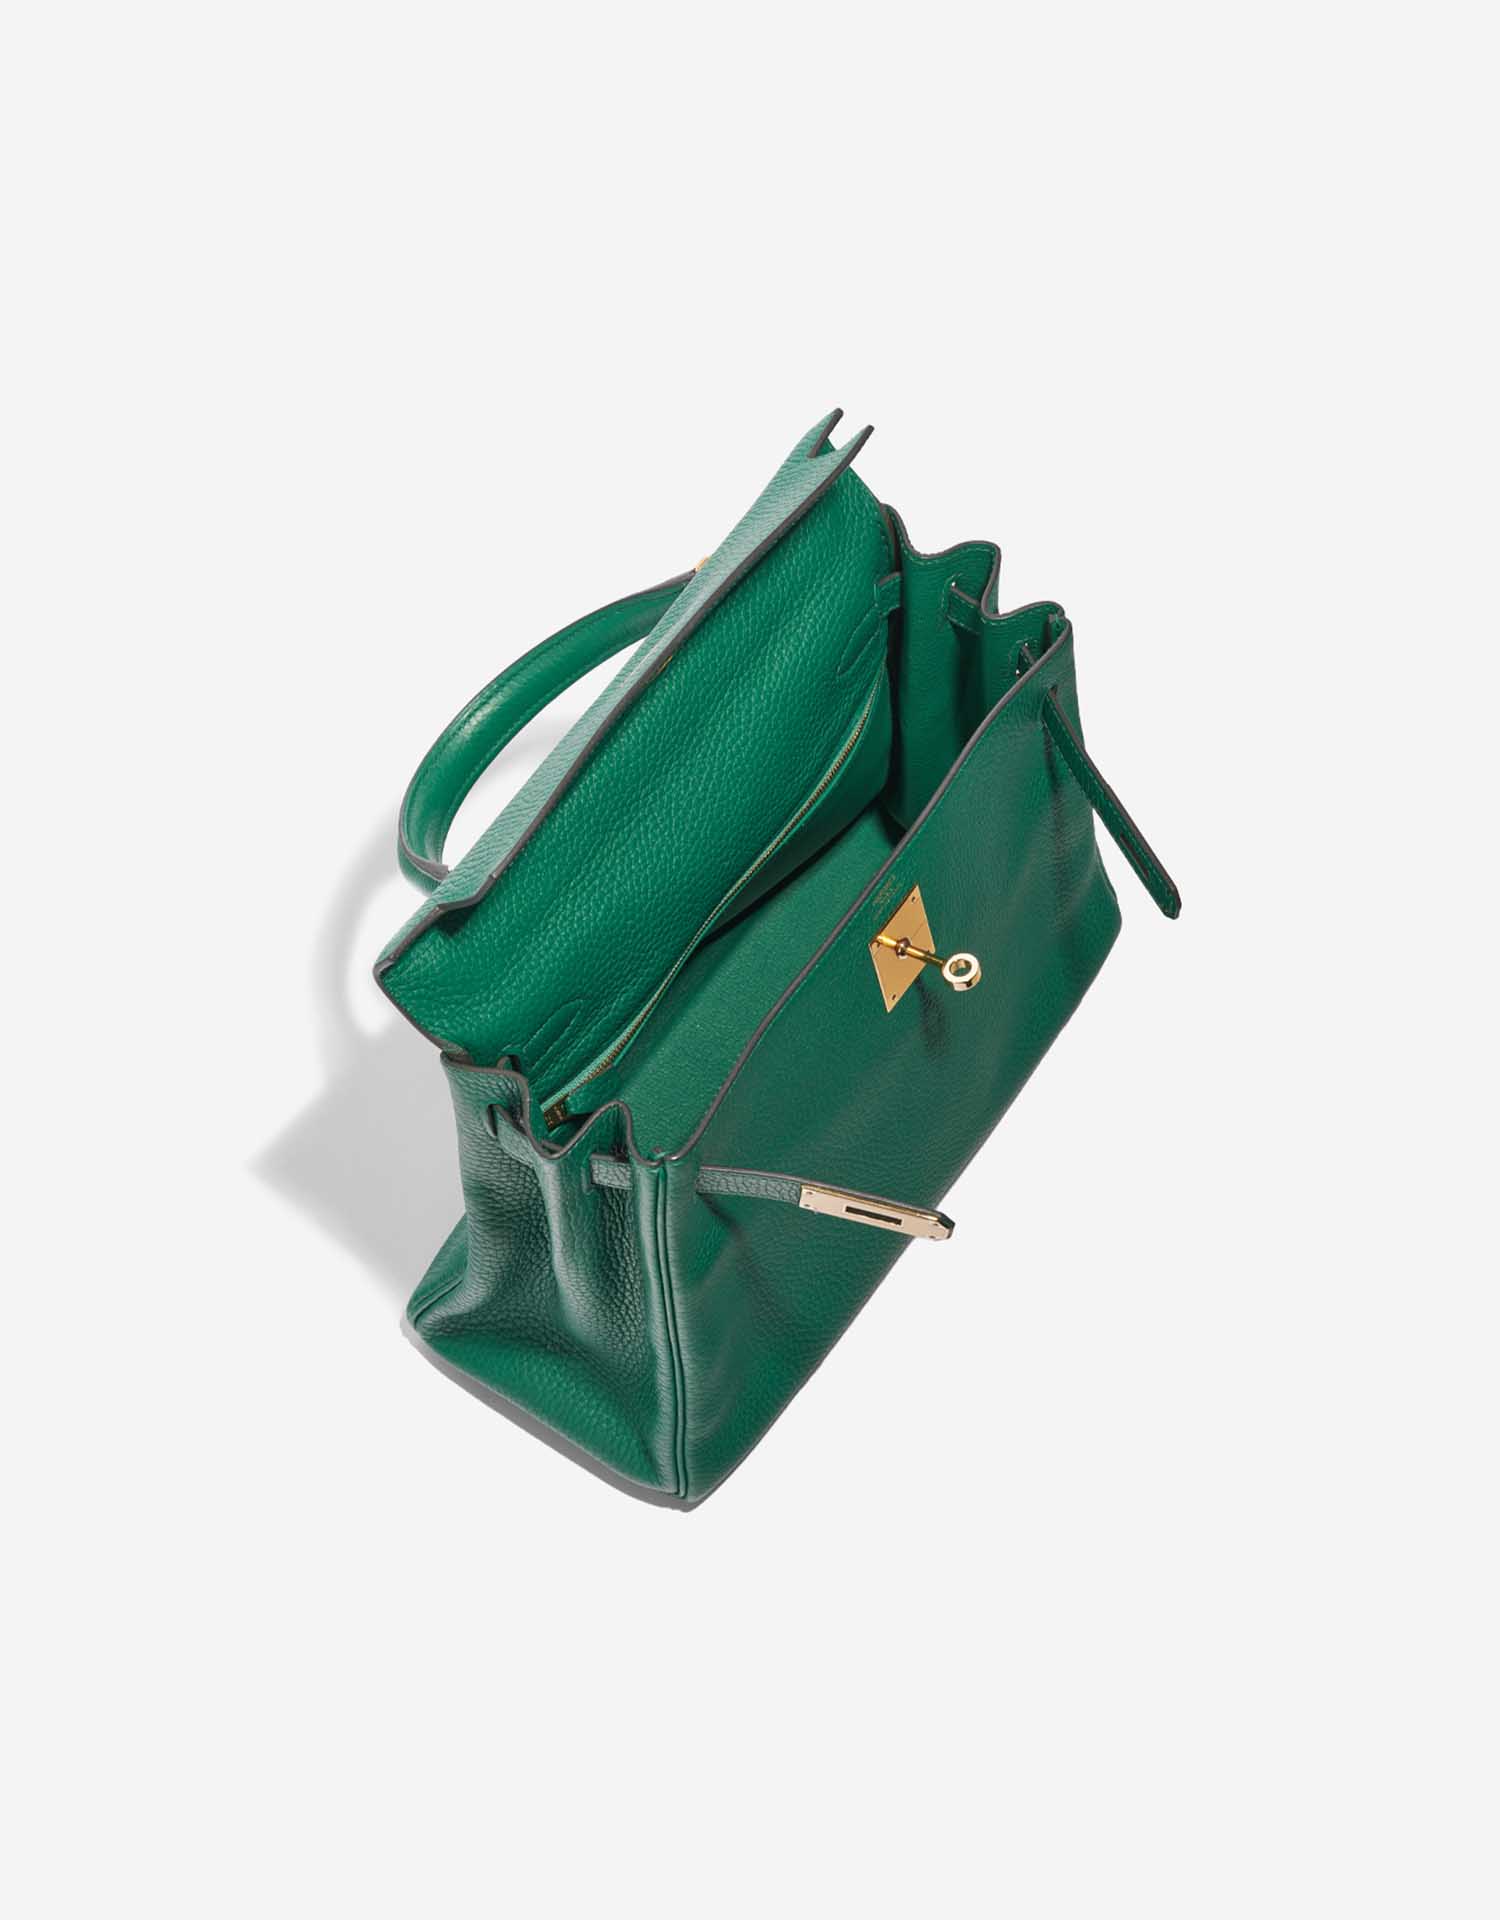 Sac Hermès d'occasion Kelly 28 Togo Vert Menthe Green Inside | Vendez votre sac de créateur sur Saclab.com